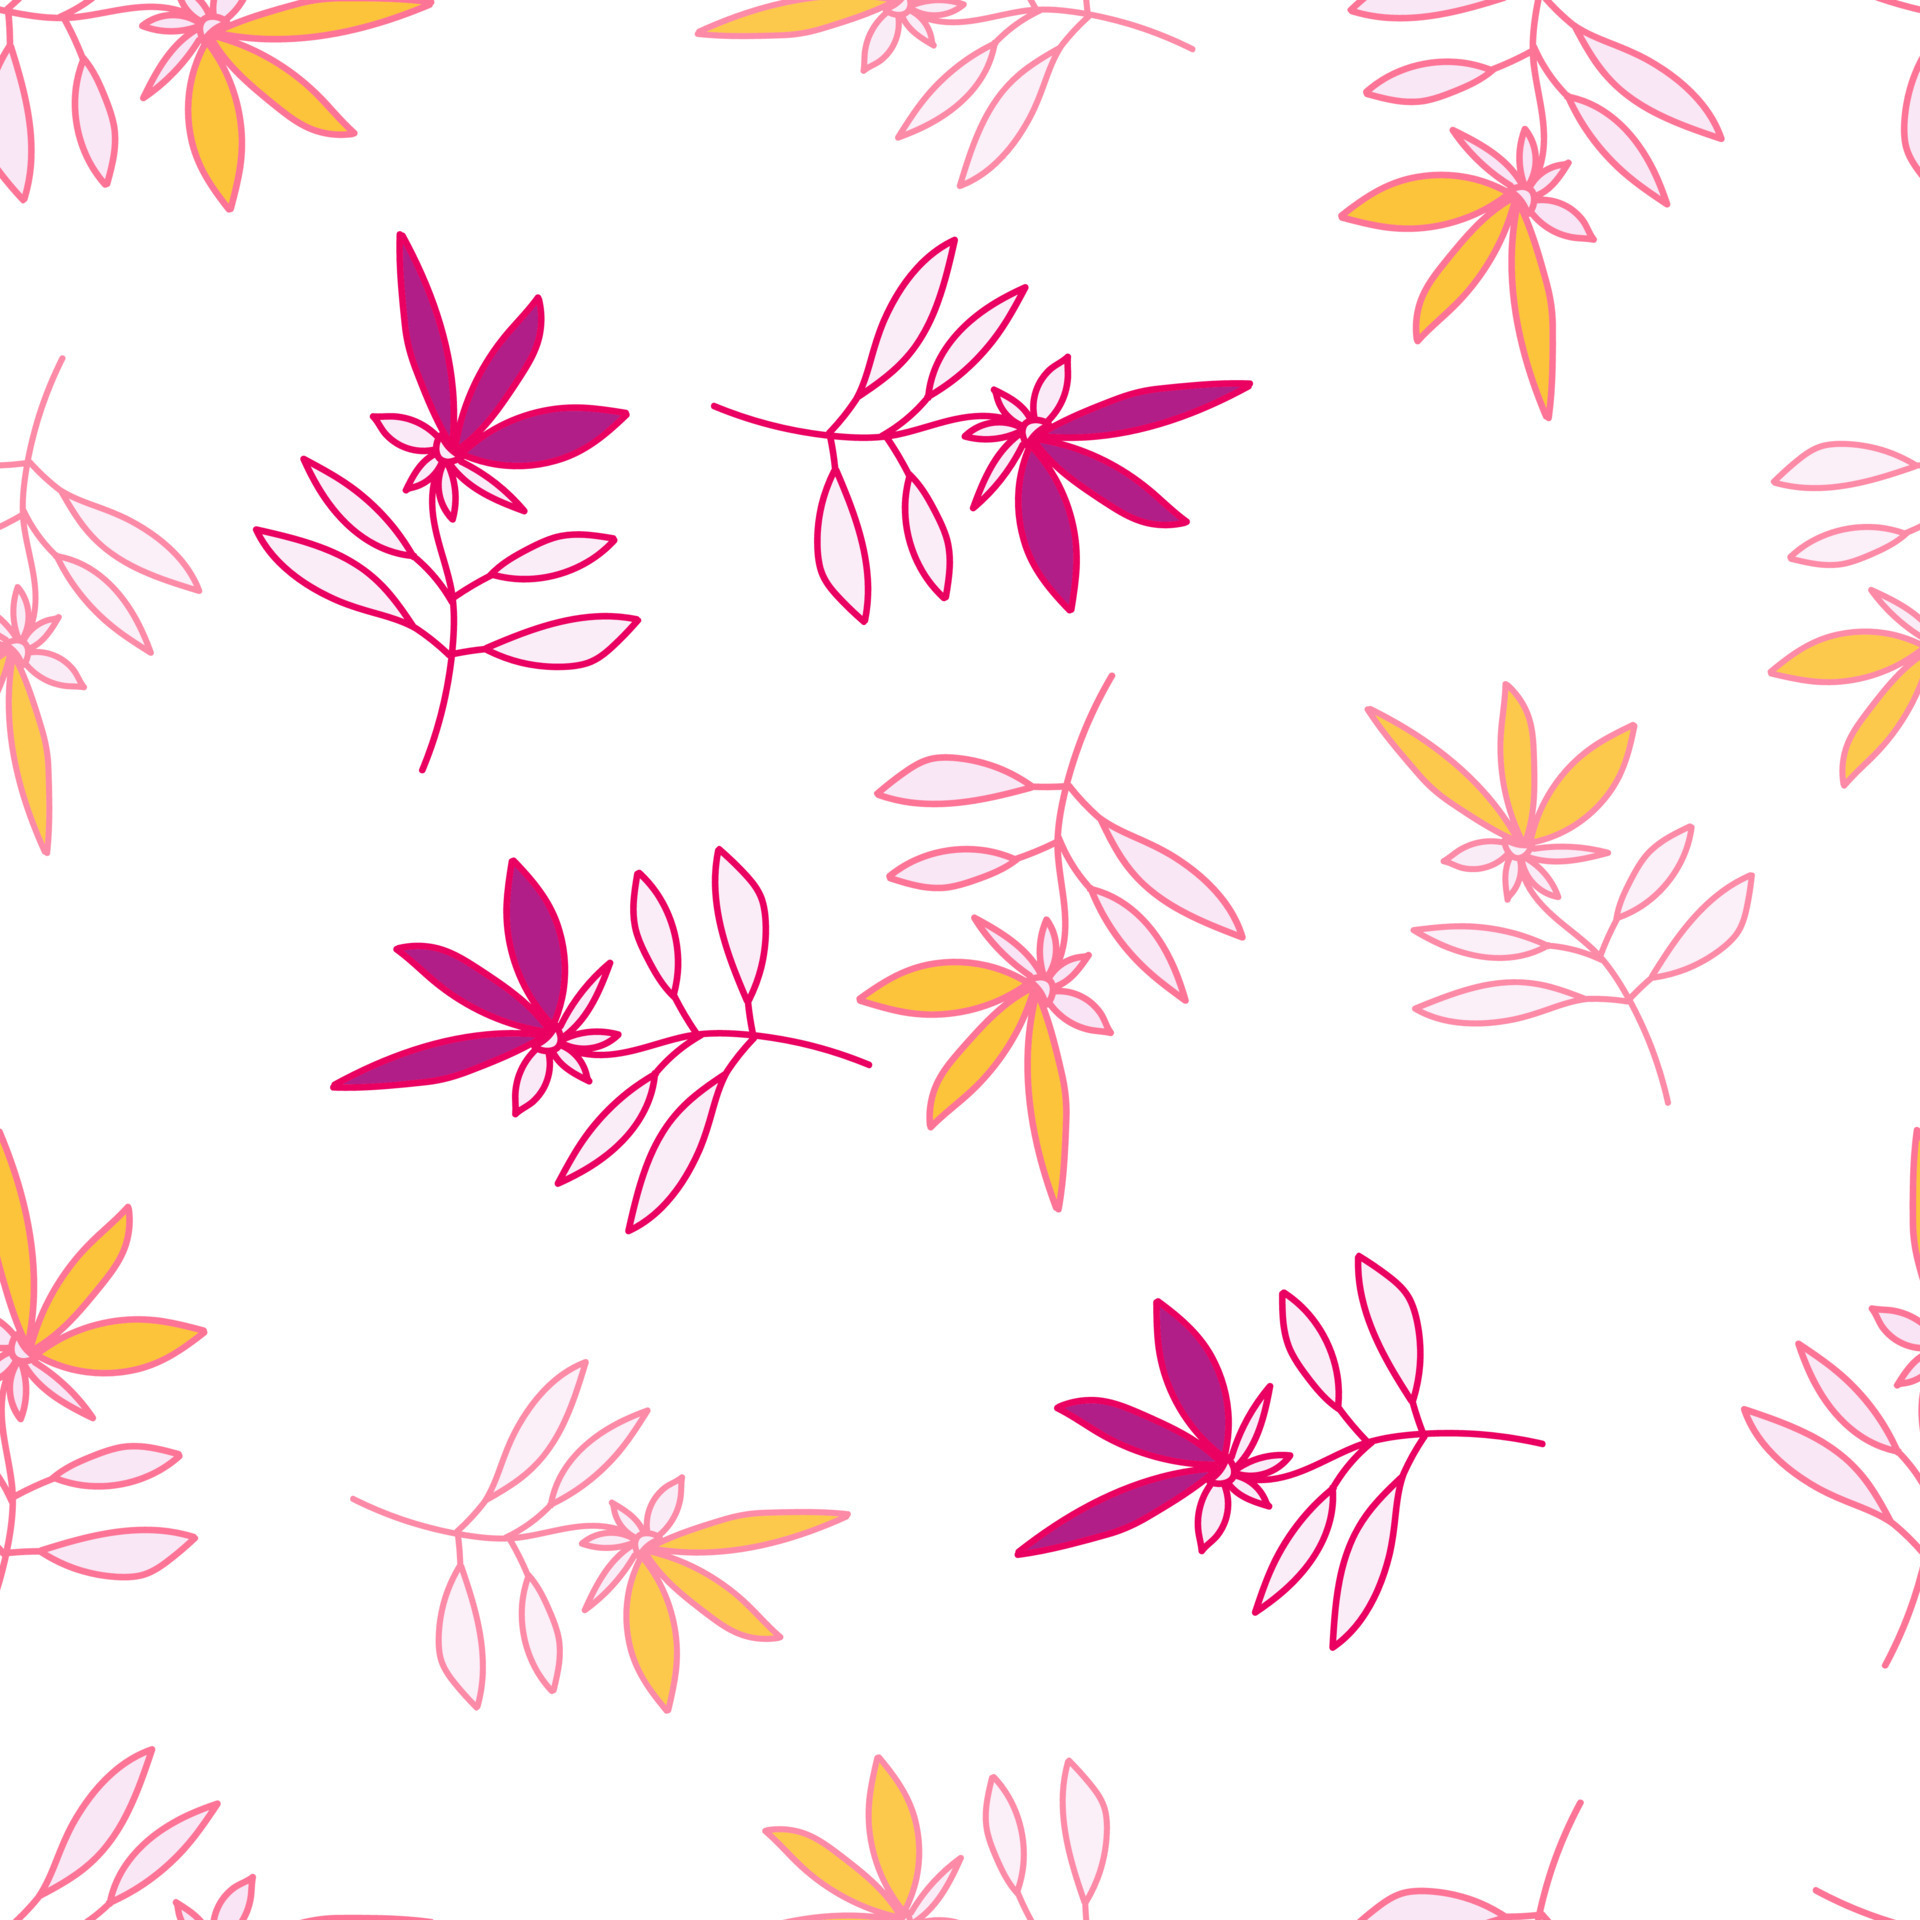 Flower HD Wallpapers Free download - PixelsTalk.Net